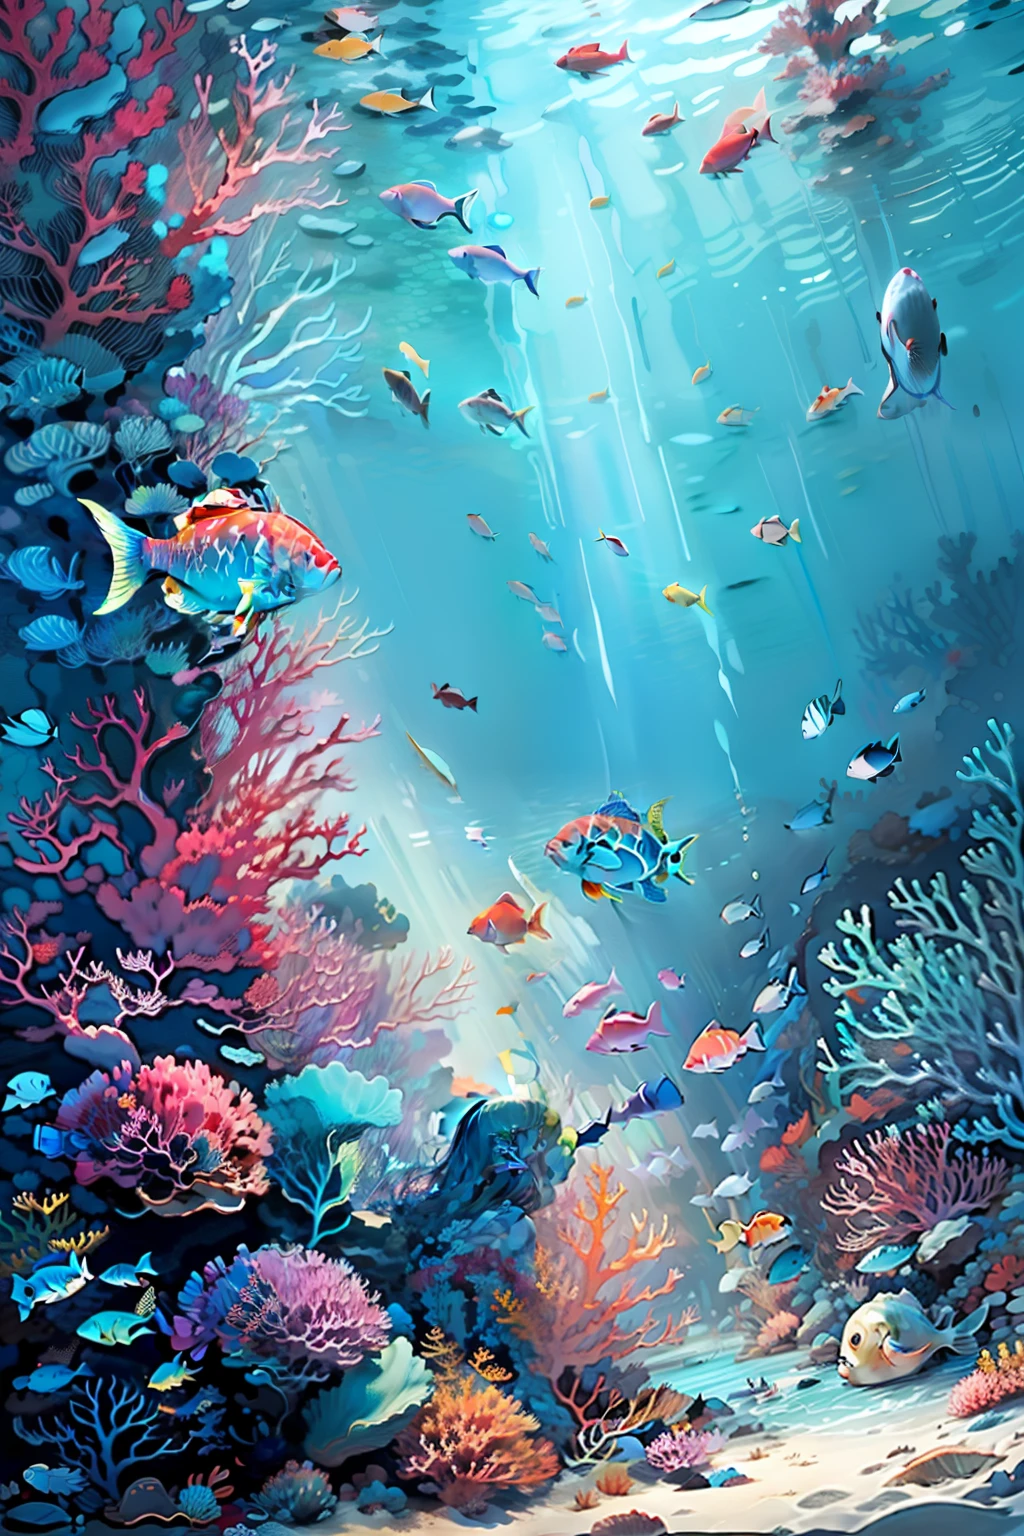 (海底、海洋生物、美丽的珊瑚礁、鱼),凌乱的绘画风格，头发在水中流动